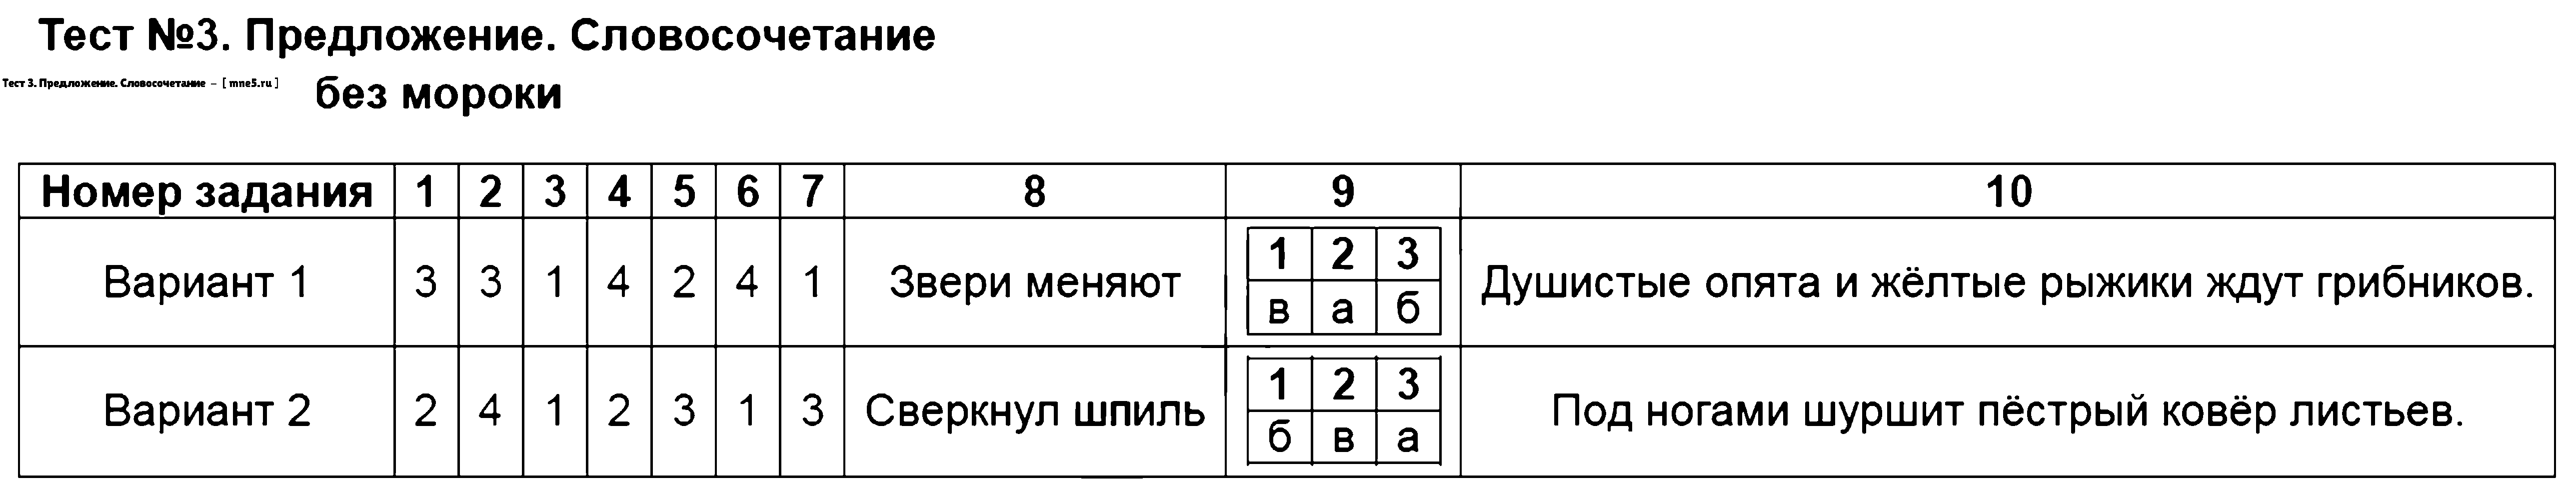 ГДЗ Русский язык 3 класс - Тест 3. Предложение. Словосочетание